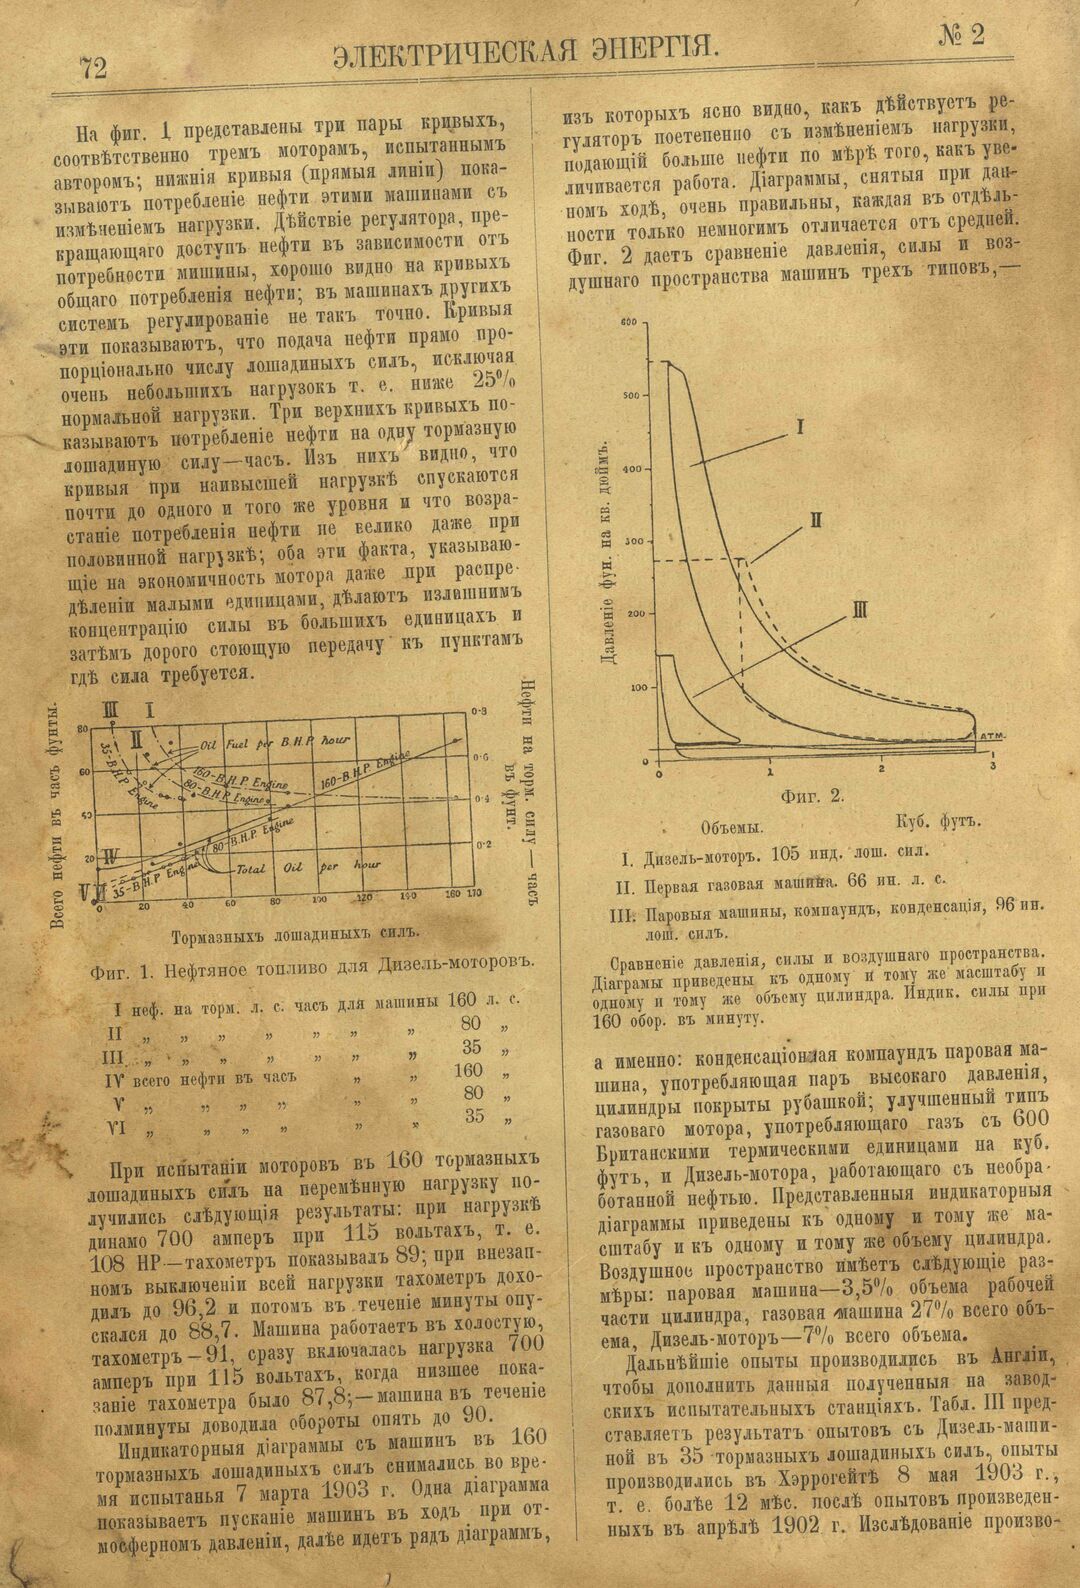 Рис. 1. Журнал Электрическая Энергiя, 2 номер, февраль, 1904 года, страница 72